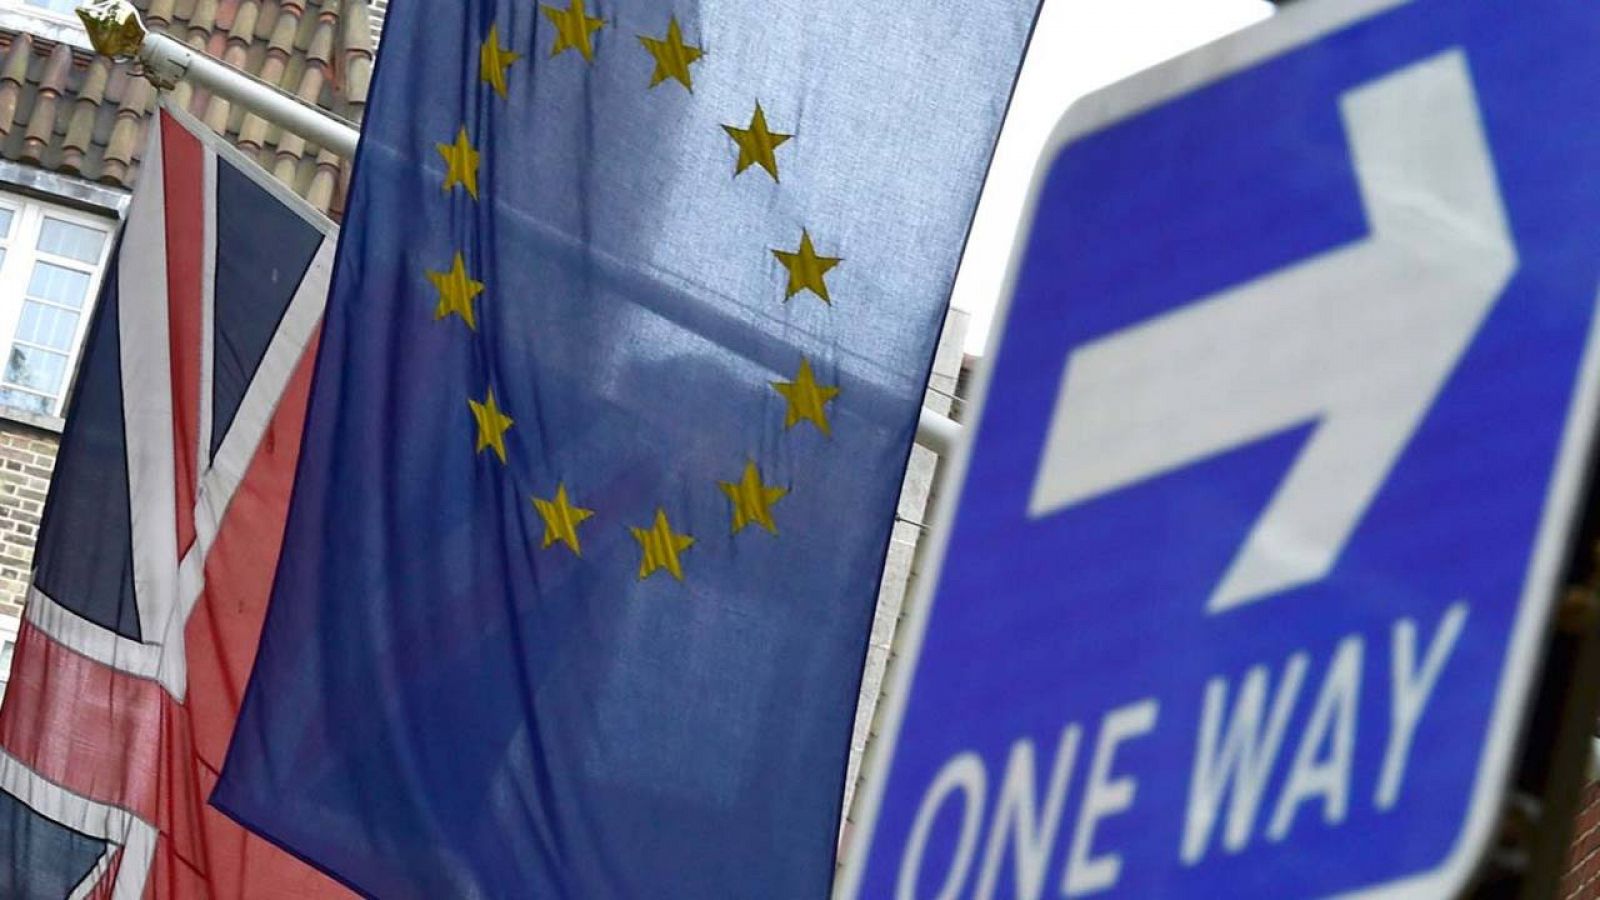 Banderas de Reino Unido y la UE ondean en la Casa de Europa en Londres